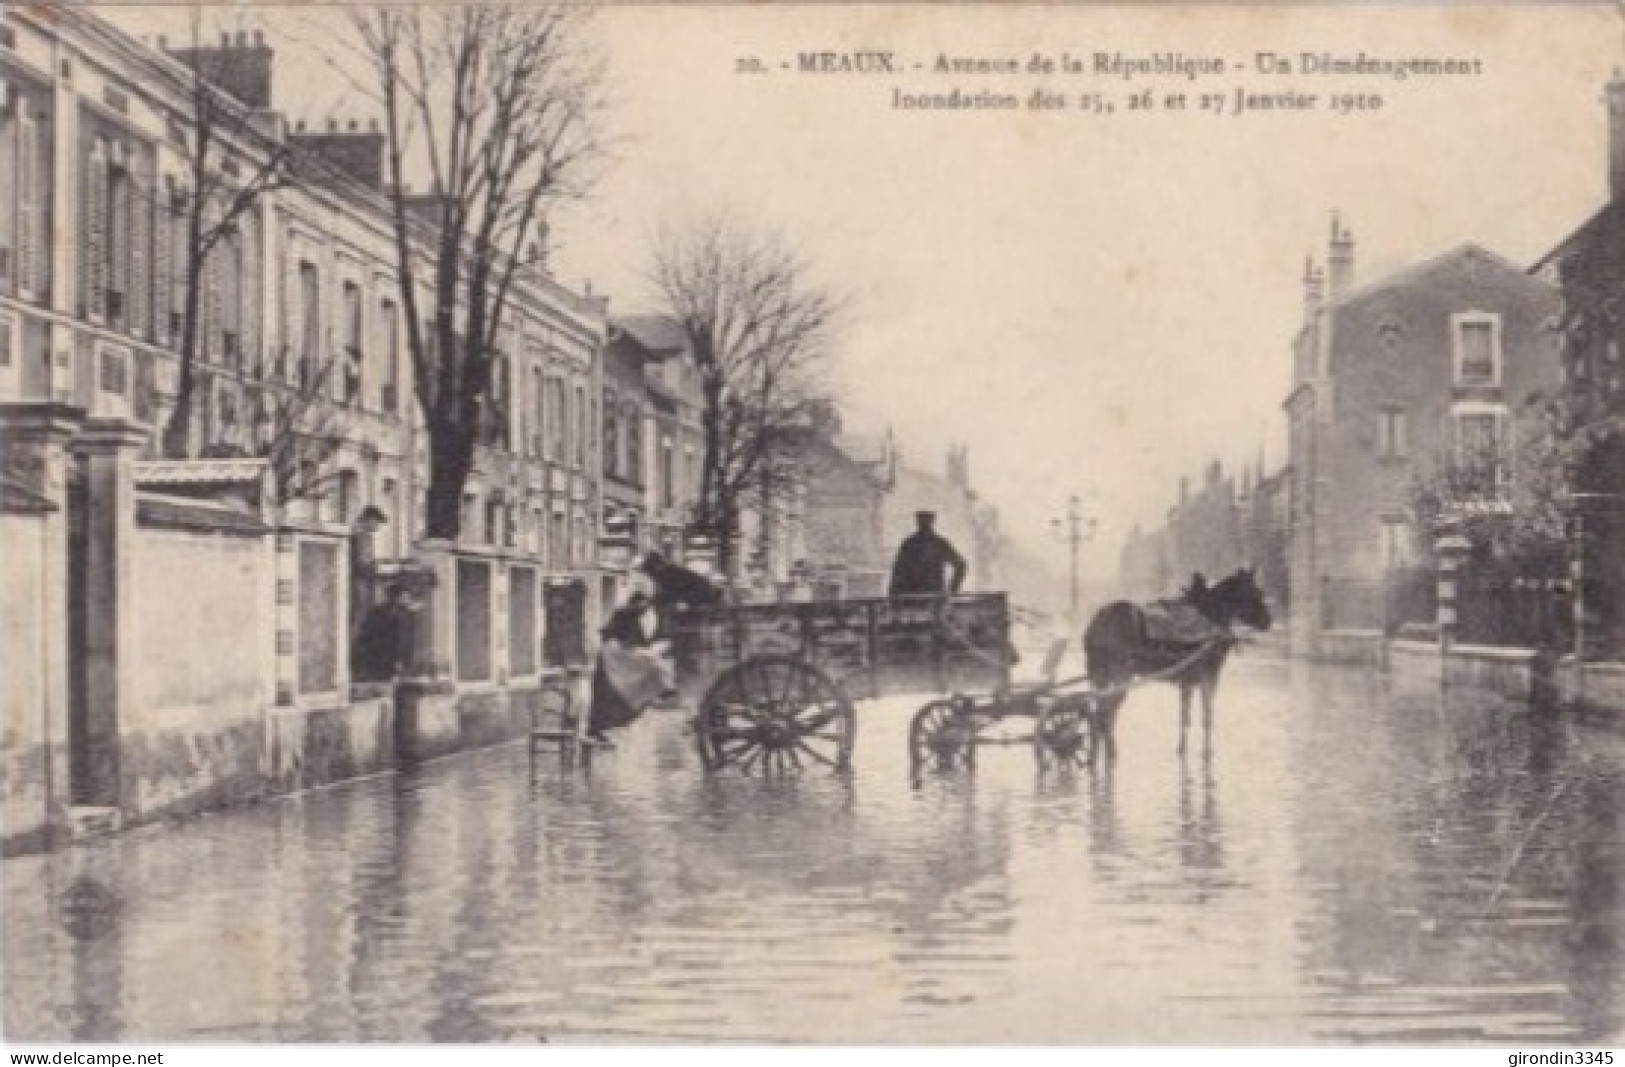 MEAUX Inondations 25-26 Et 27 Janvier 1910 Avenue De La REPUBLIQUE Un Déménagement - Meaux